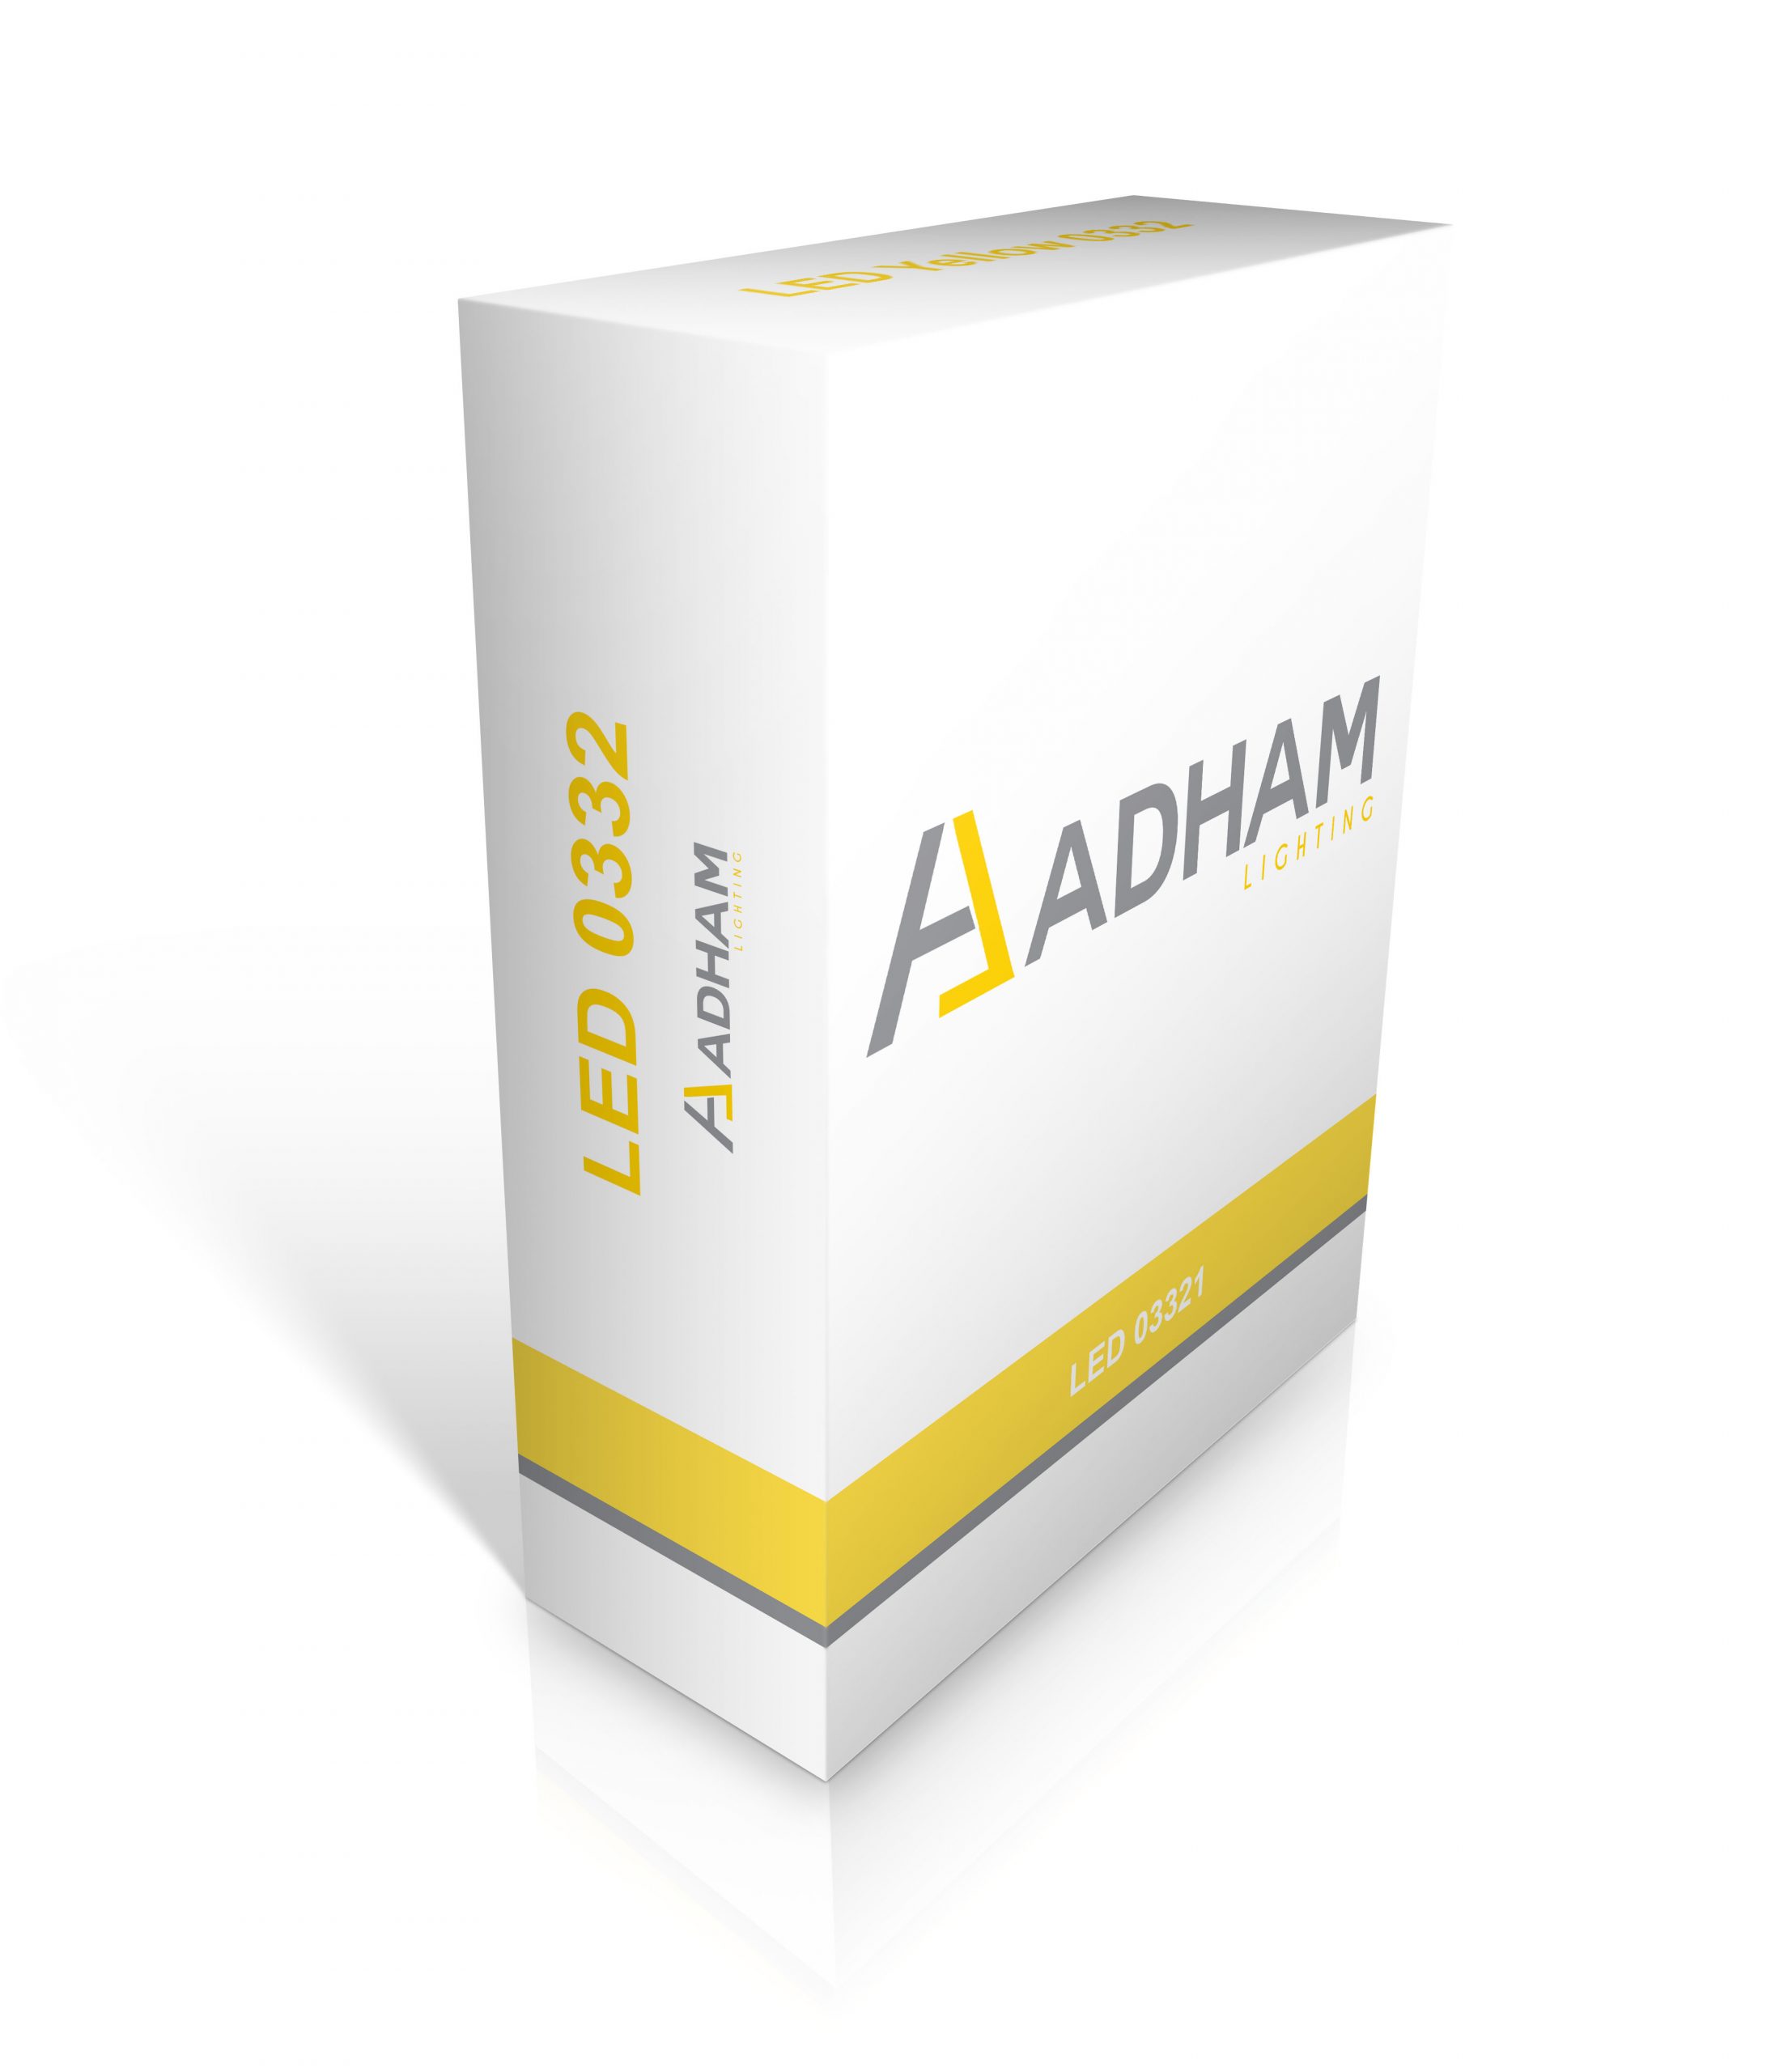 Adham Lighting Branding